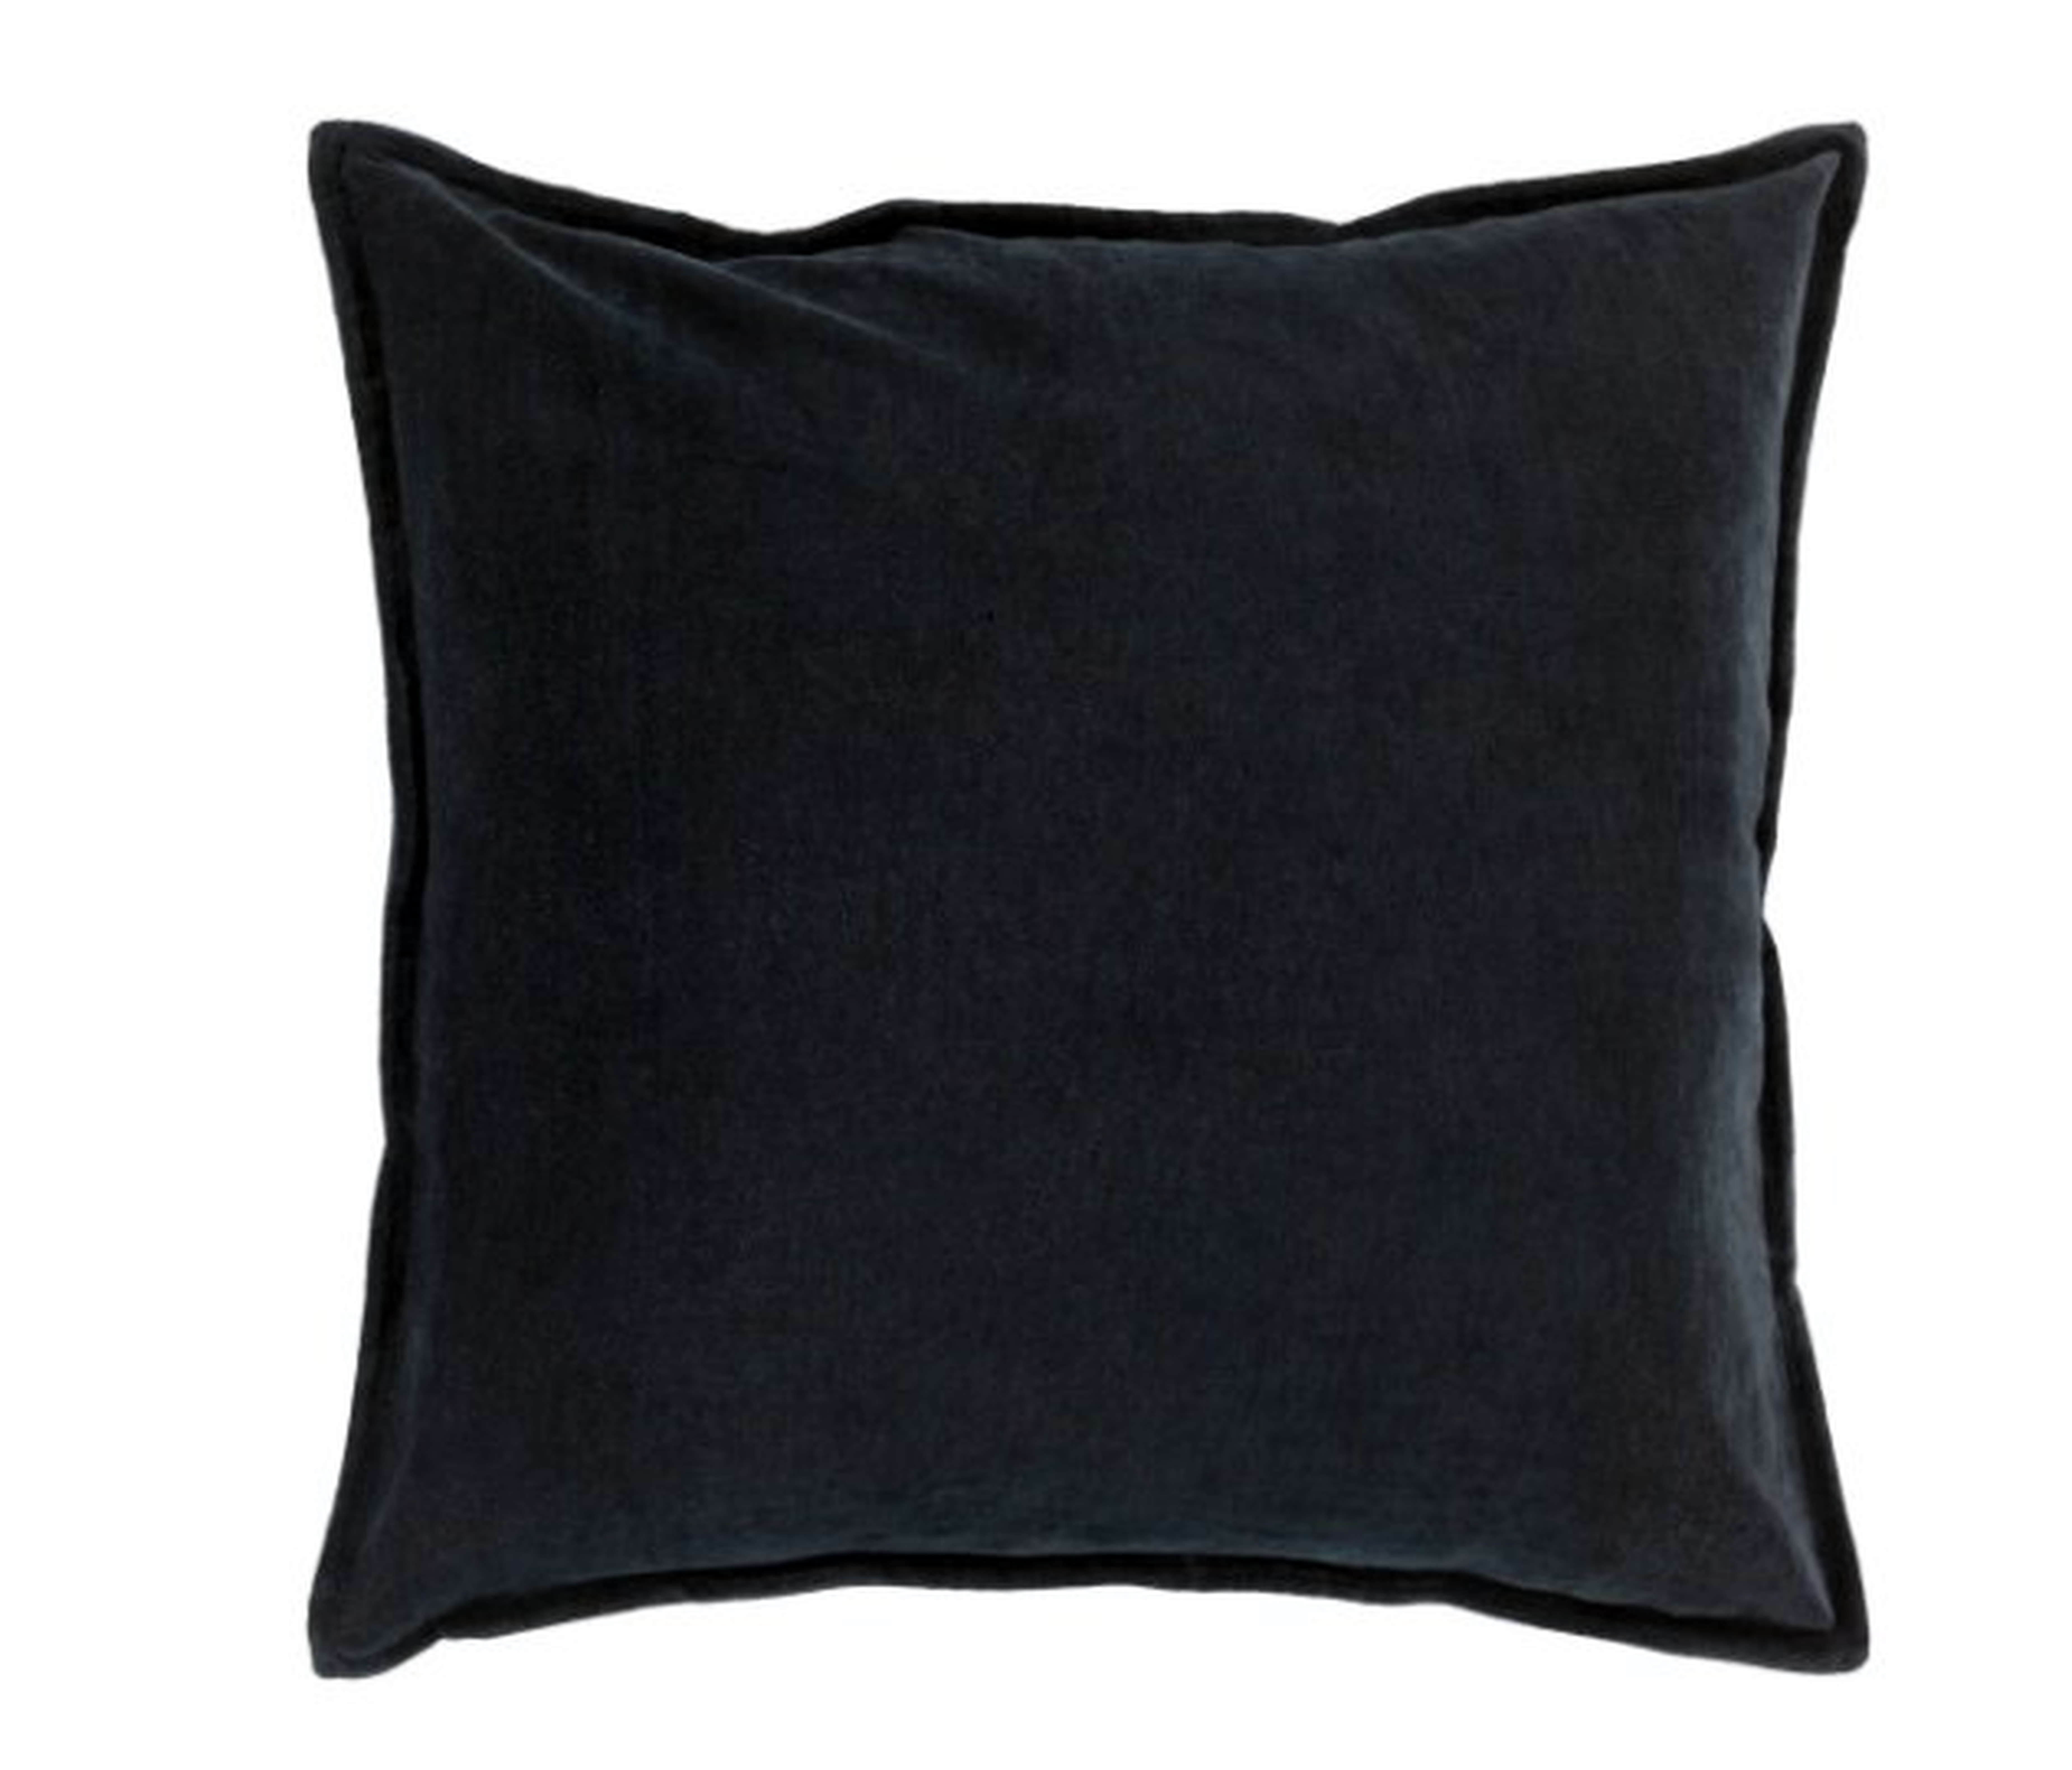 Cotton Velvet Throw Pillow, Black, 18" x 18" - Neva Home